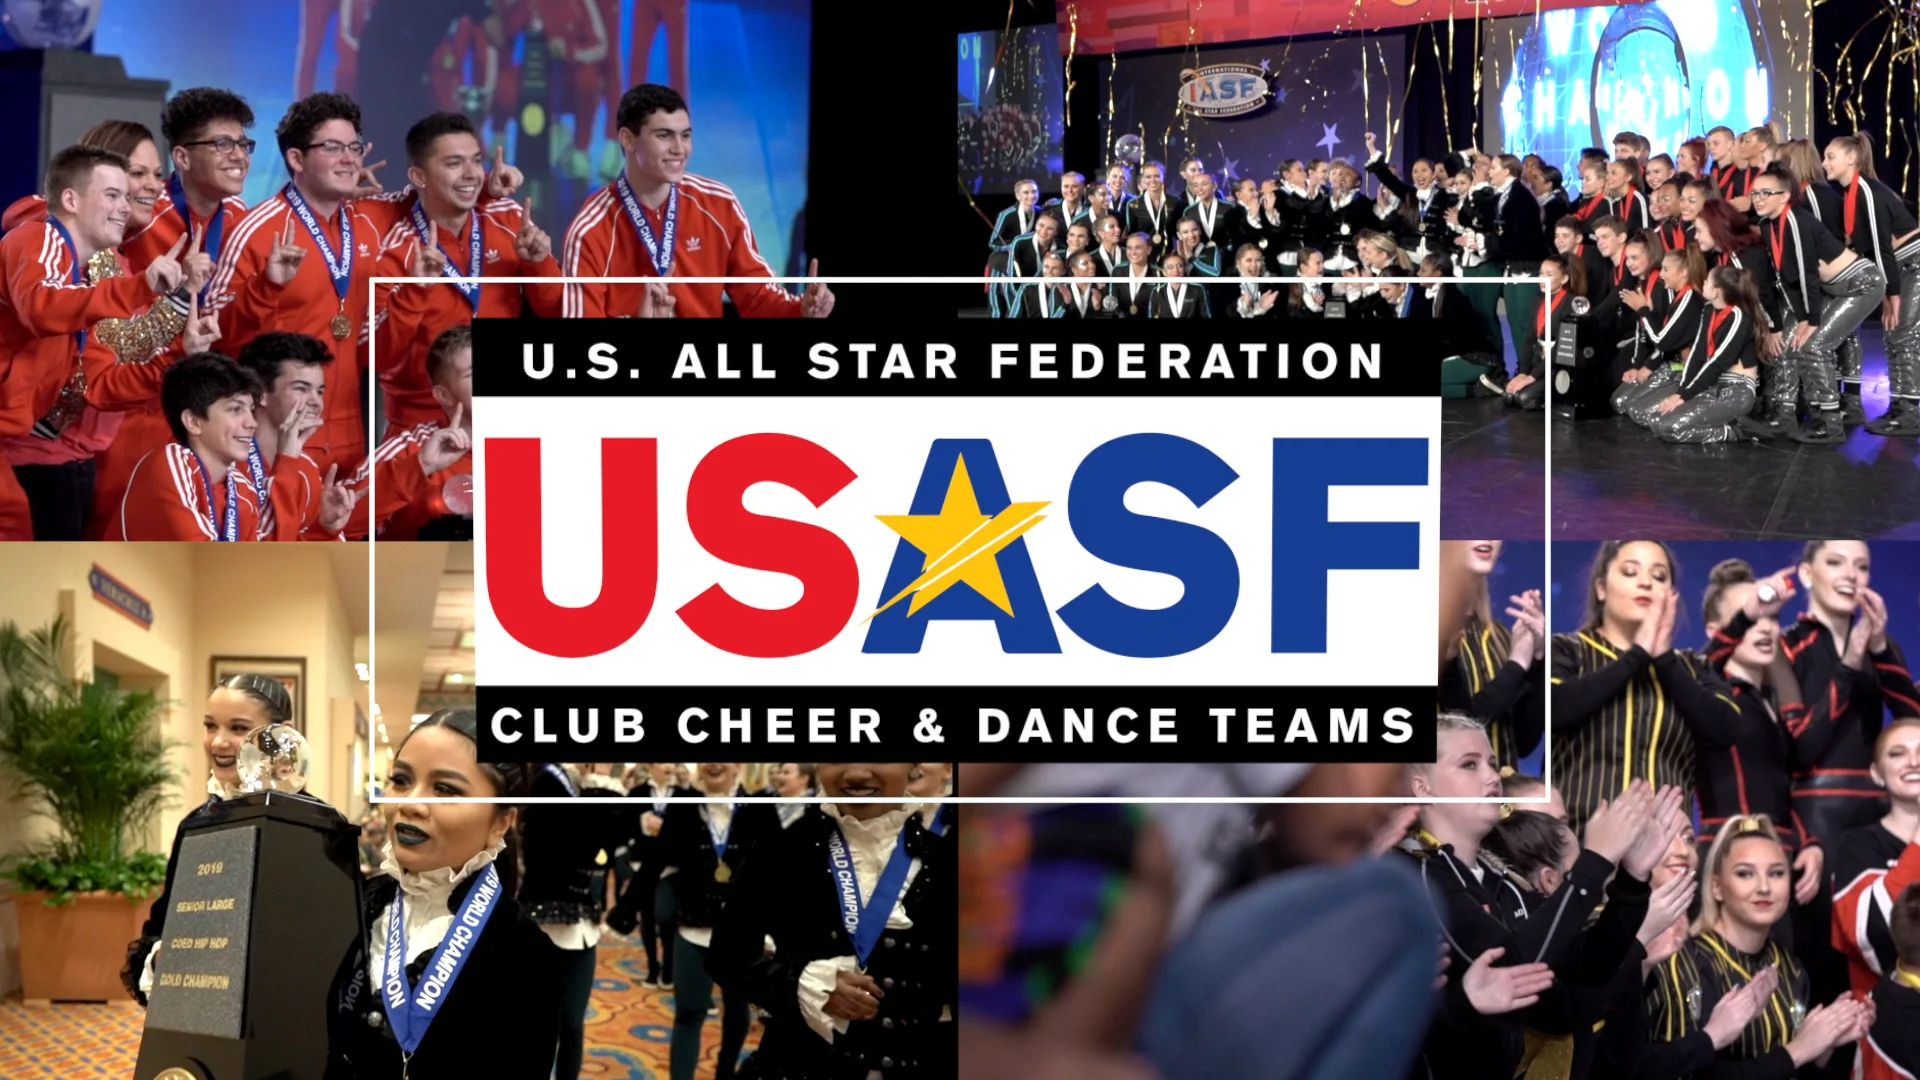 U.S. All Star Federation - Cheer & Dance